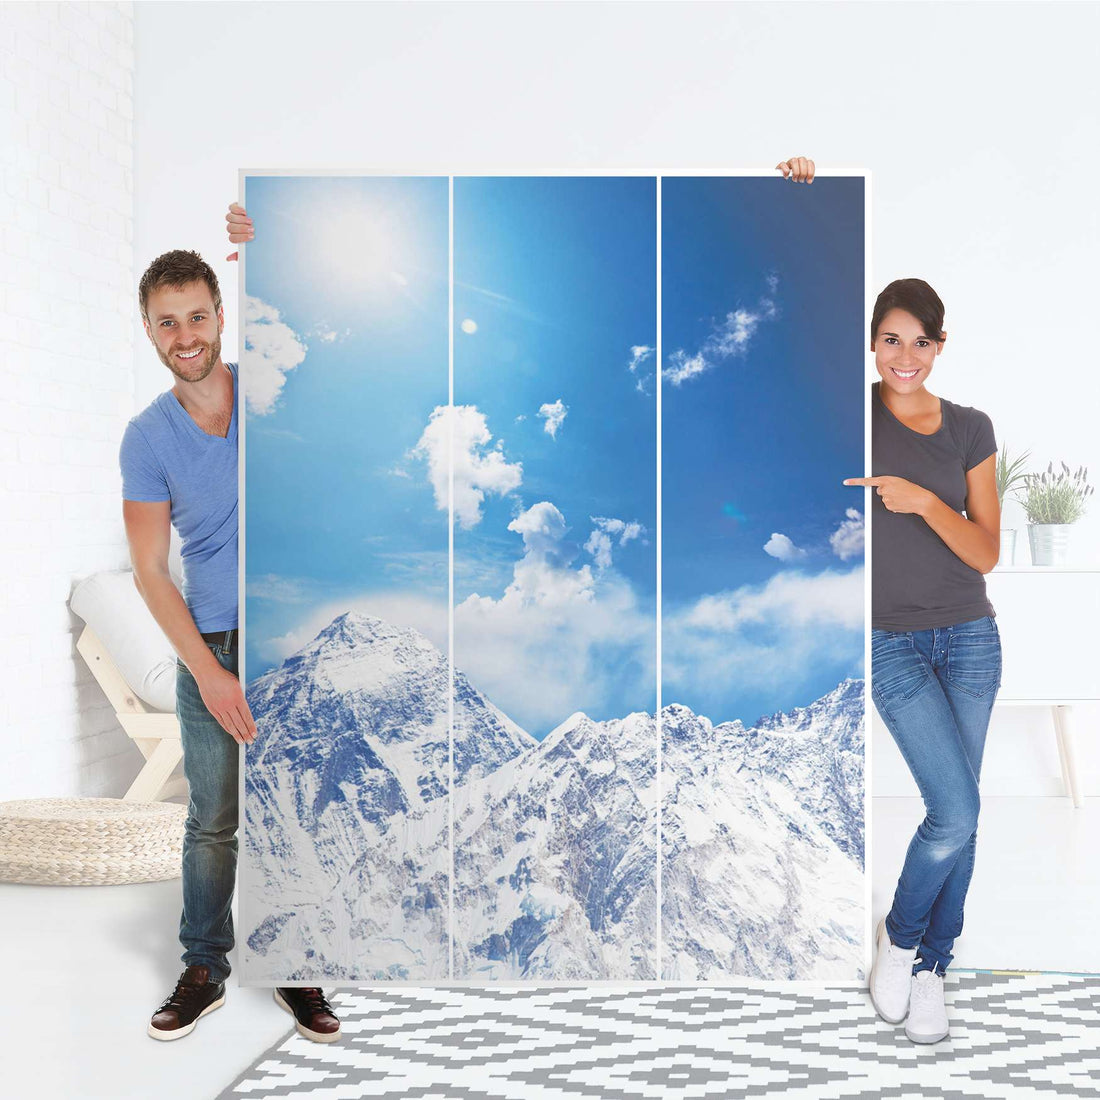 Folie für Möbel Everest - IKEA Pax Schrank 201 cm Höhe - 3 Türen - Folie